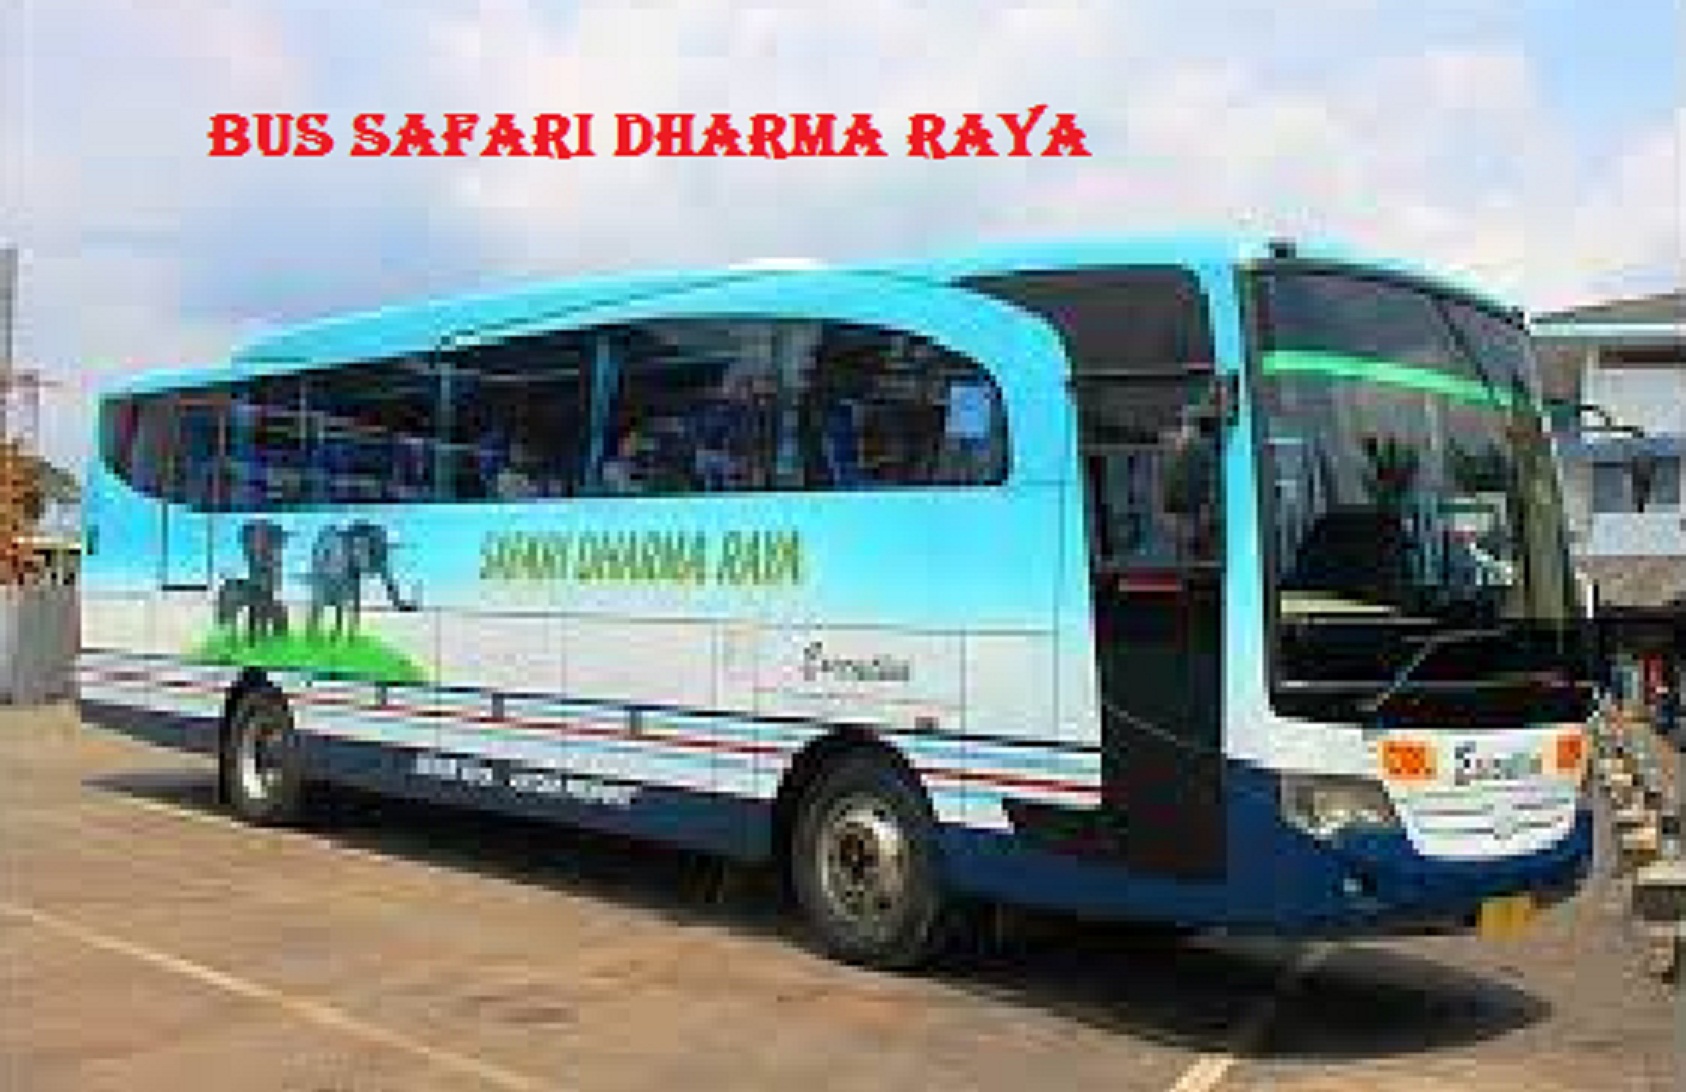 agen bus safari dharma raya yogyakarta